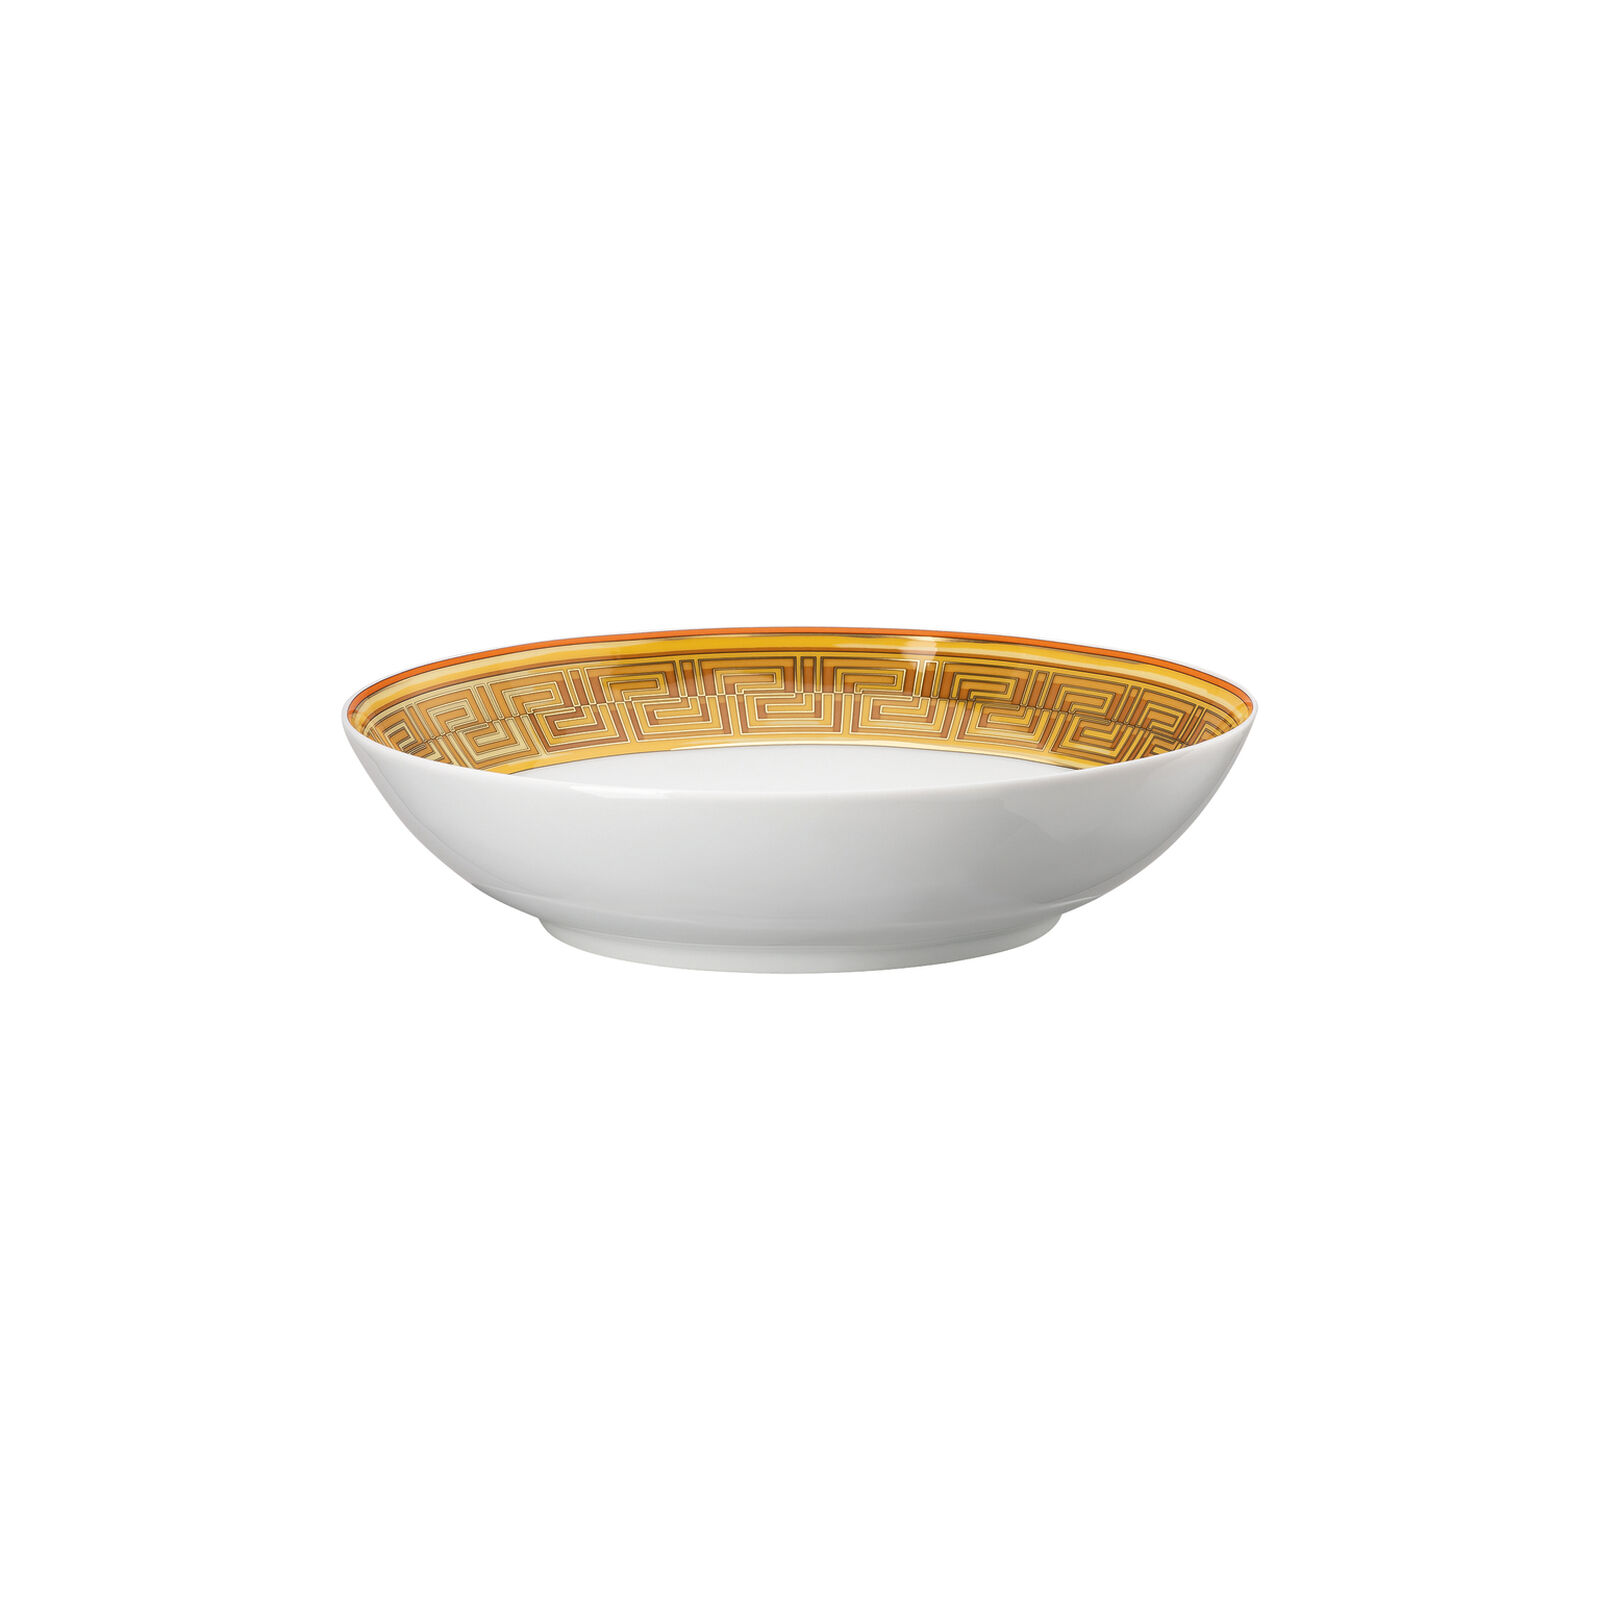 Mosaique au 24 gold soup bowl